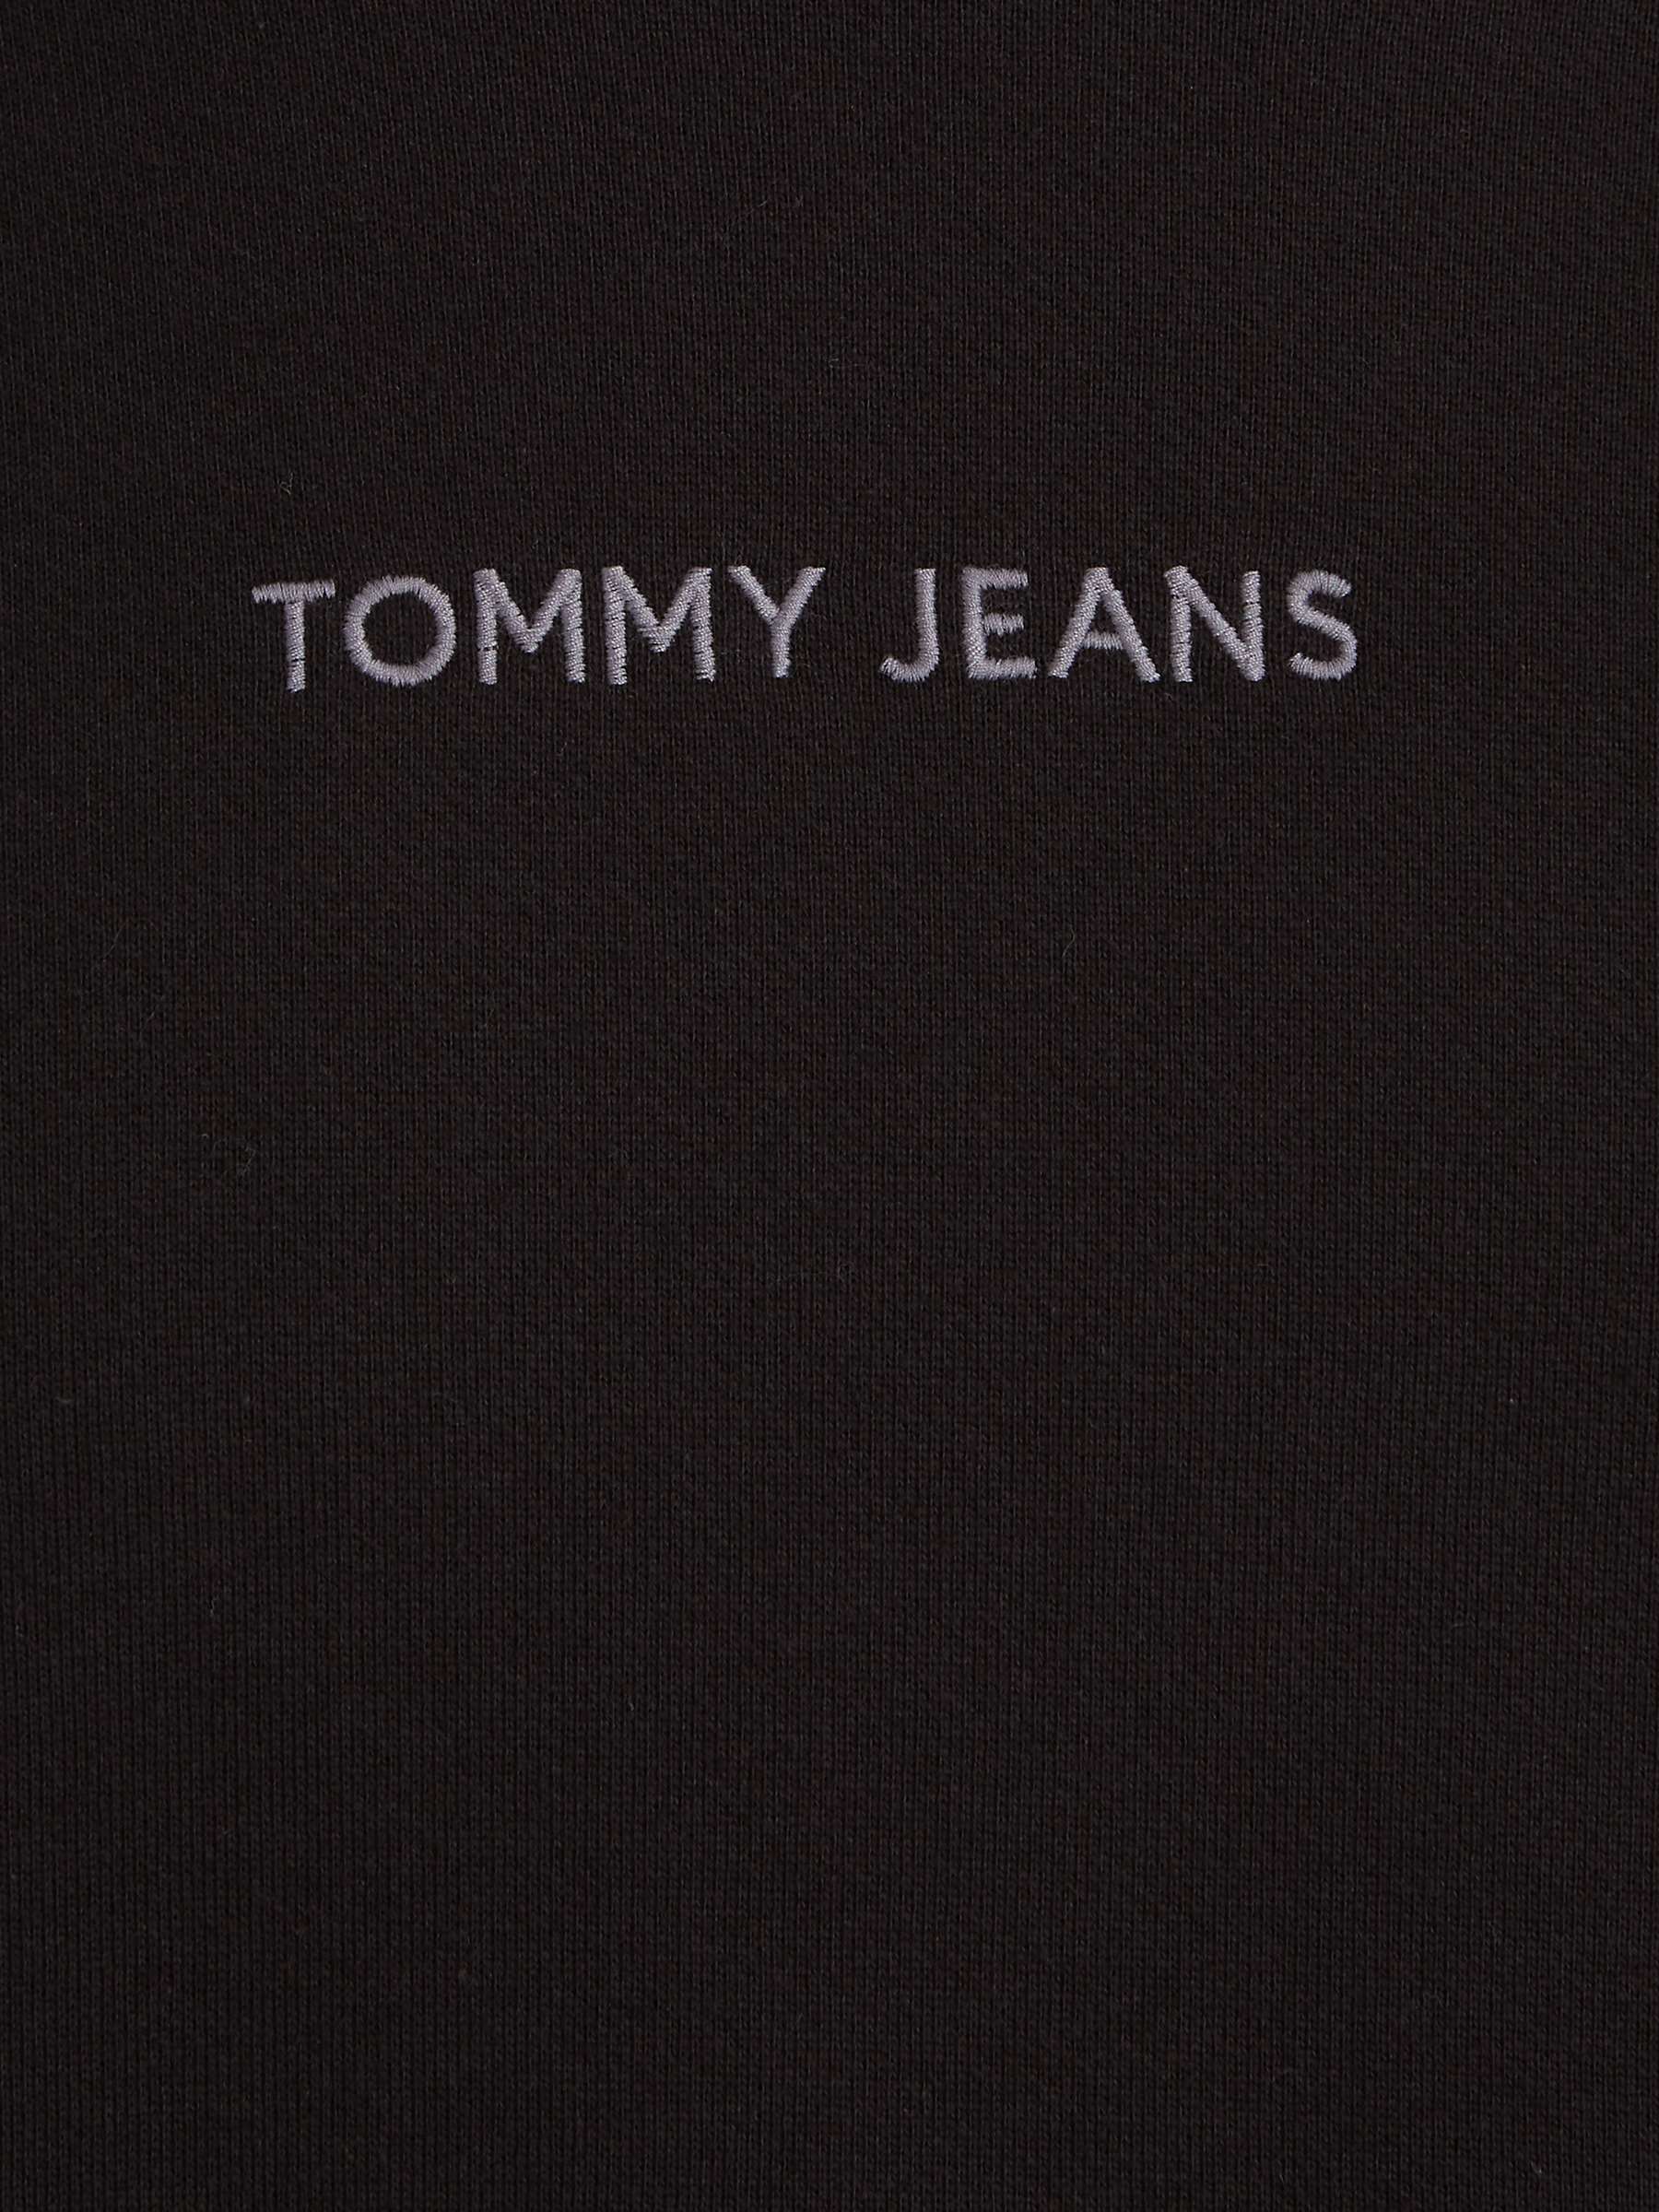 Buy Tommy Jeans Boxy Jumper, Black Online at johnlewis.com